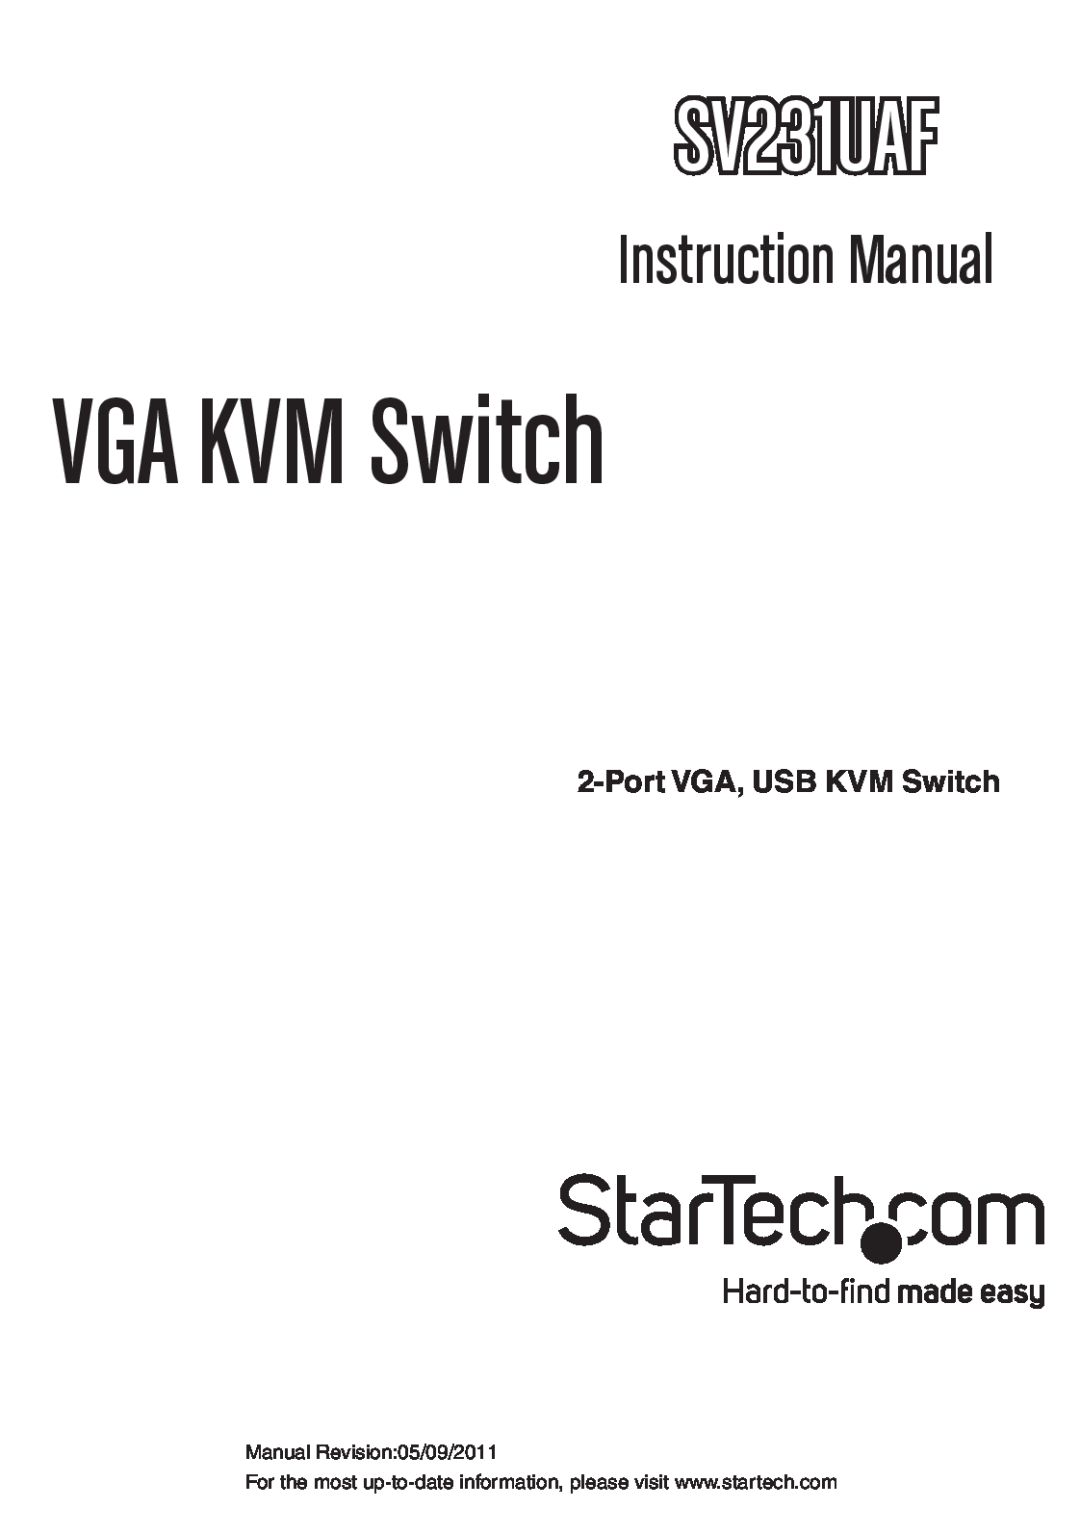 StarTech.com SV231UAF instruction manual Port VGA, USB KVM Switch, VGA KVM Switch, Instruction Manual 